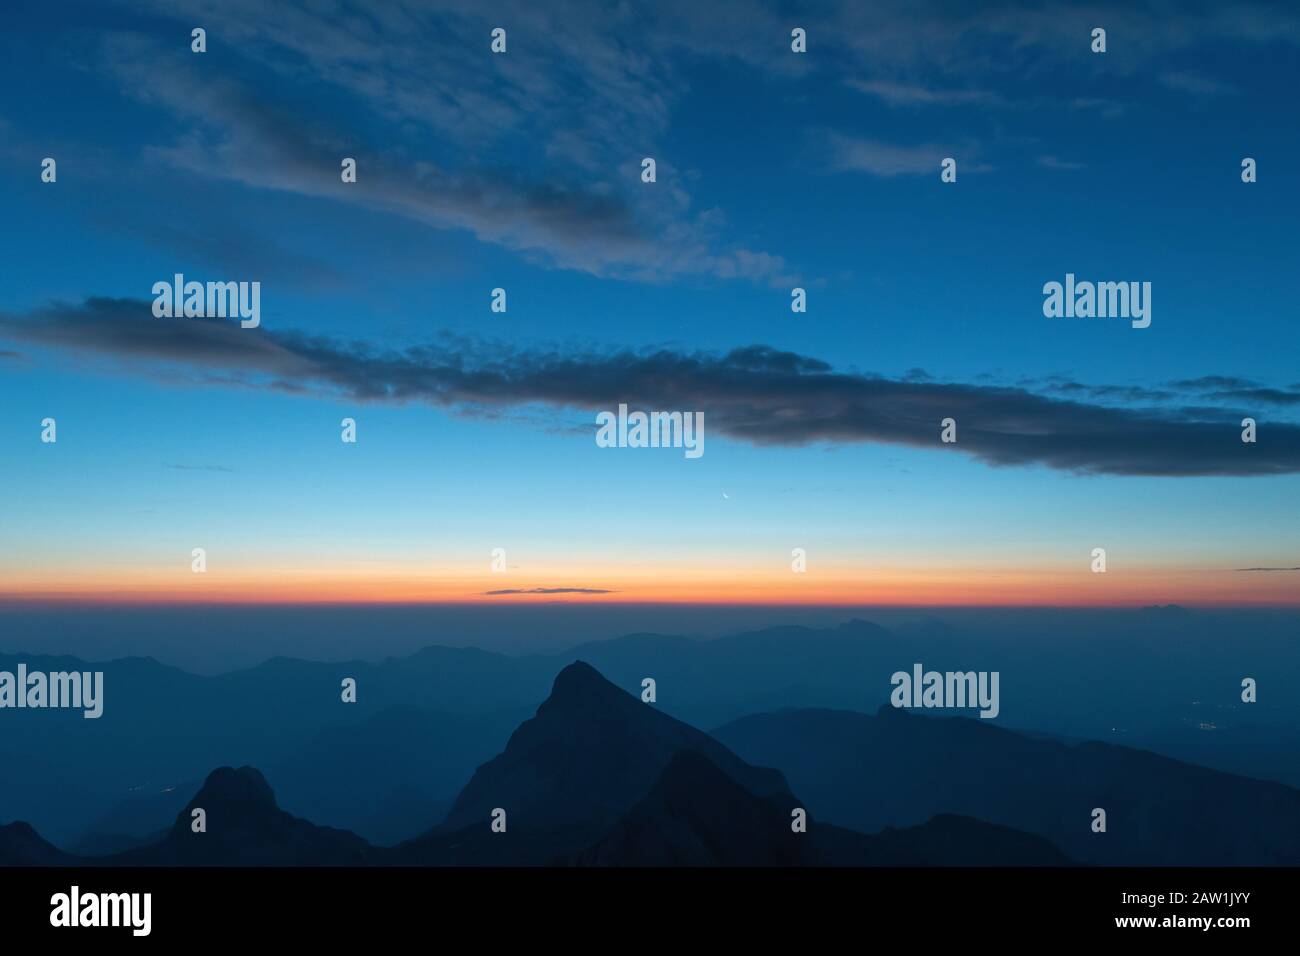 Wunderschöner Dämmerungshimmel vor Sonnenaufgang in den Alpen-Bergketten in Slowenien, Triglav National Park. Reise-, Umwelt- und Selbstreflexionskonzepte Stockfoto